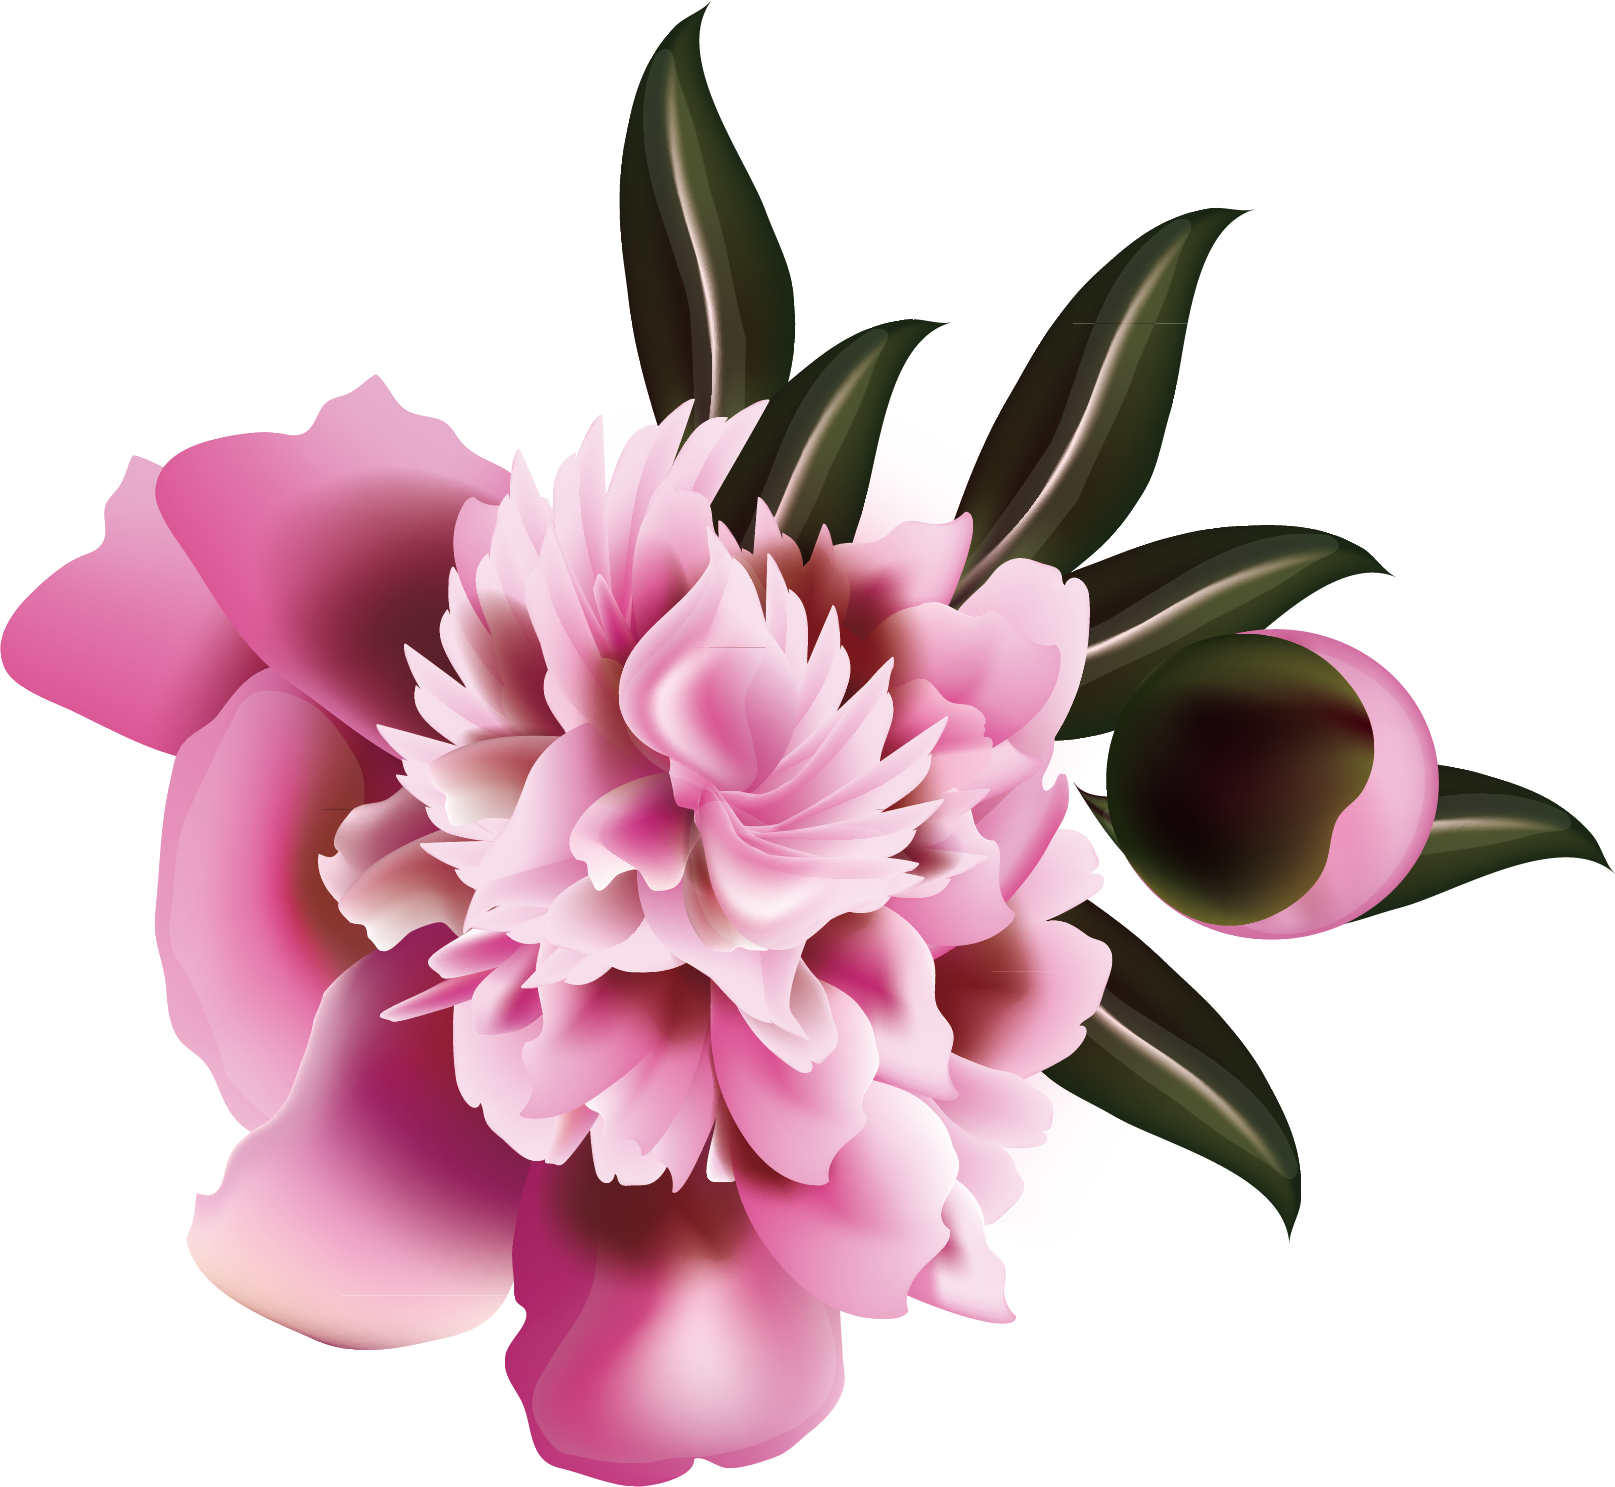 Floral Design Flower Illustration Clipart (1615x1487), Png Download